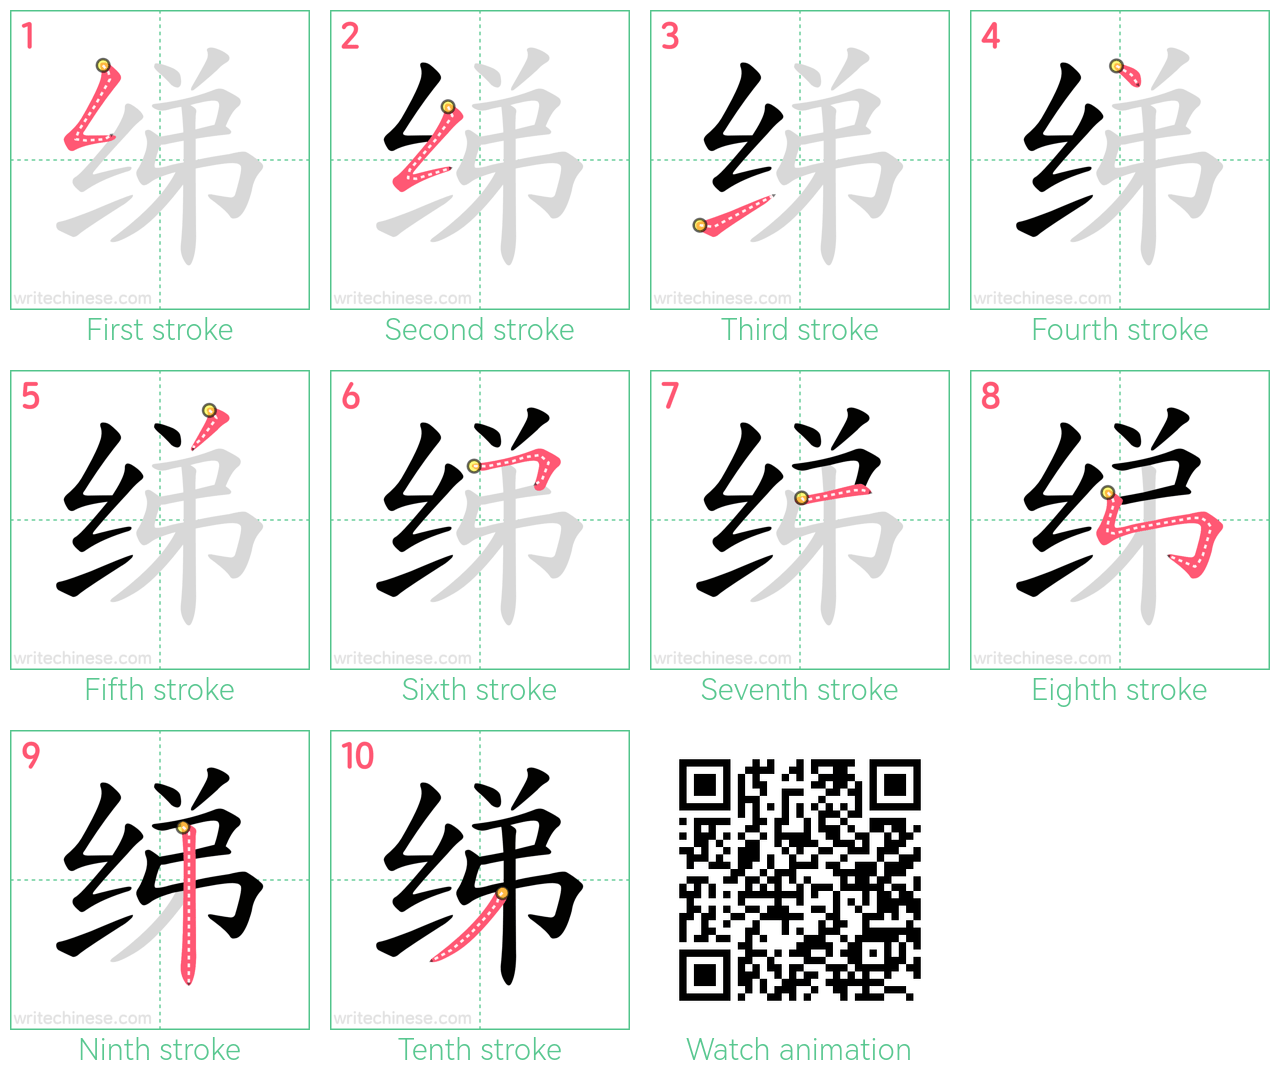 绨 step-by-step stroke order diagrams